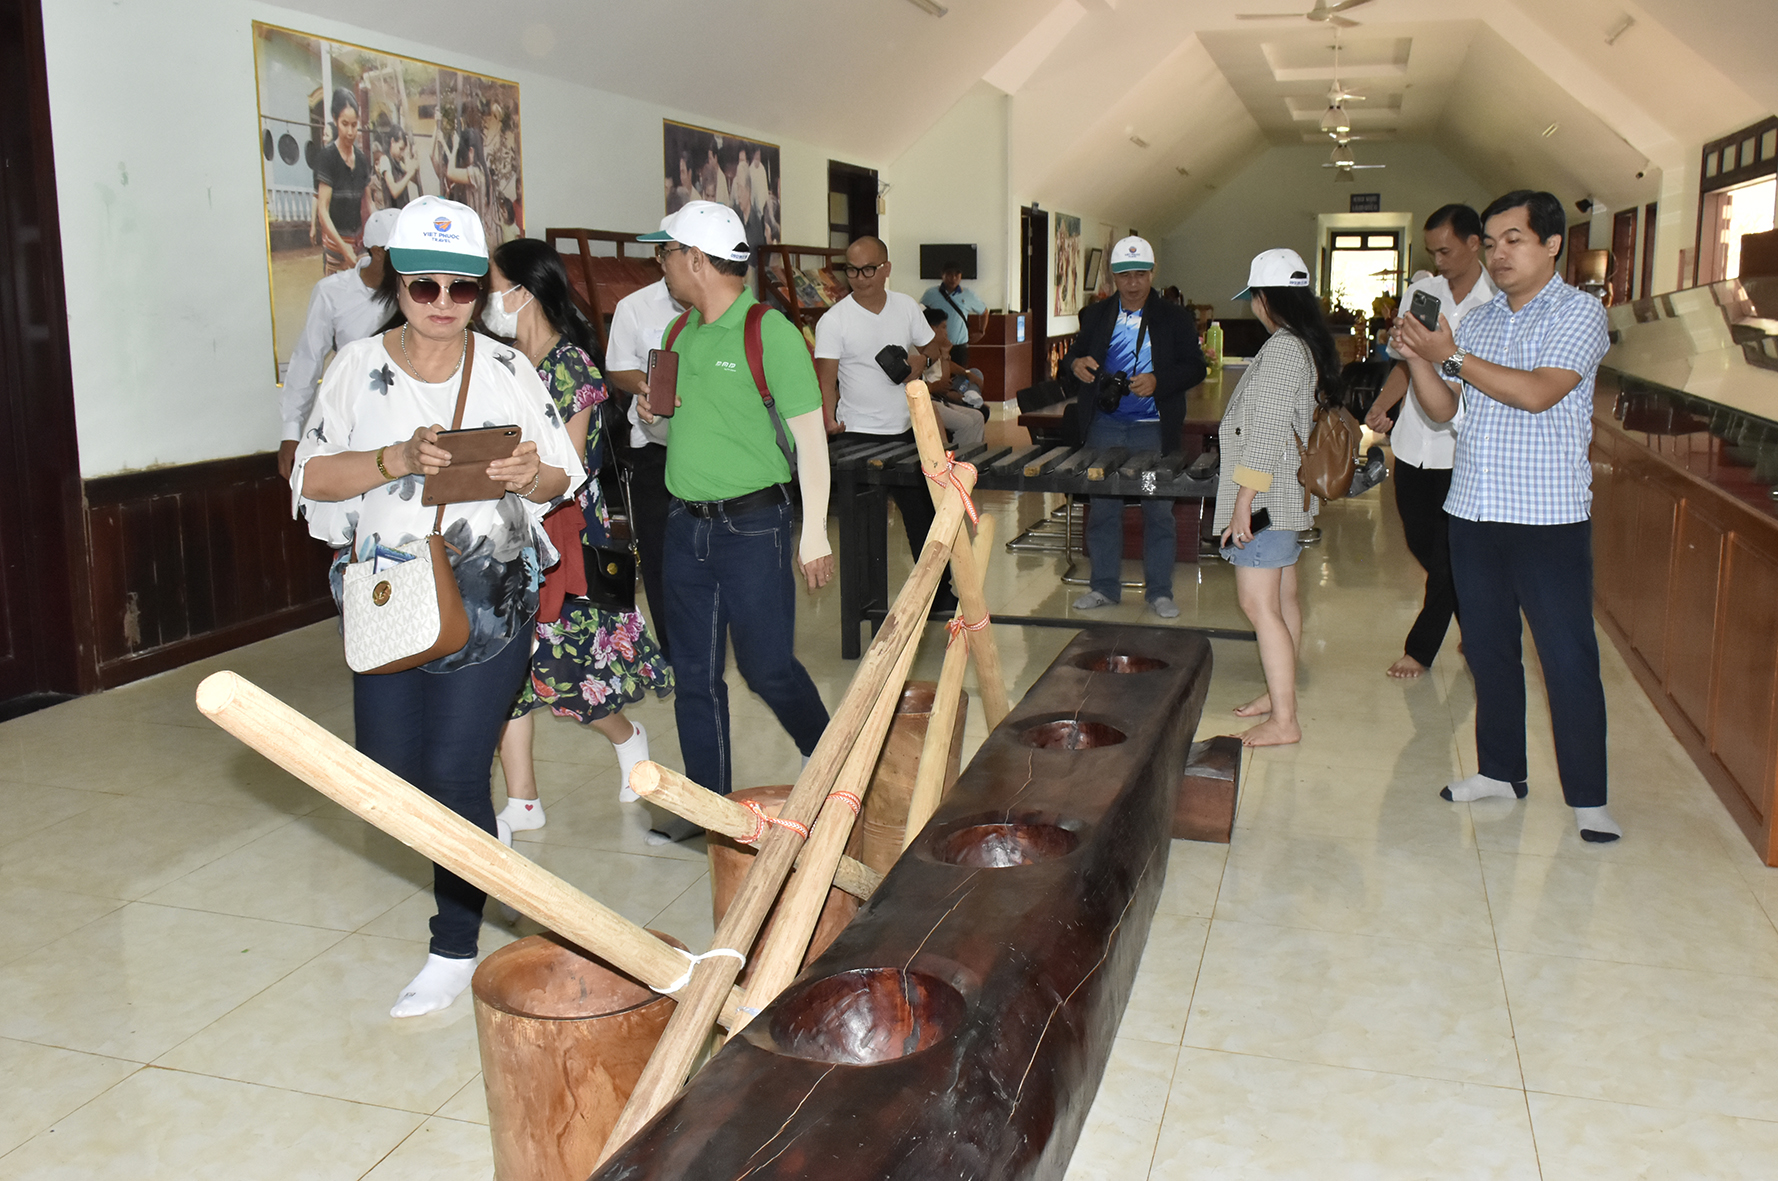 Bộ chày cối tái hiện hoạt động giã gạo ủng hộ cách mạng của người S’tiêng được trưng bày tại Khu bảo tồn văn hóa dân tộc S’tiêng sóc Bom Bo.